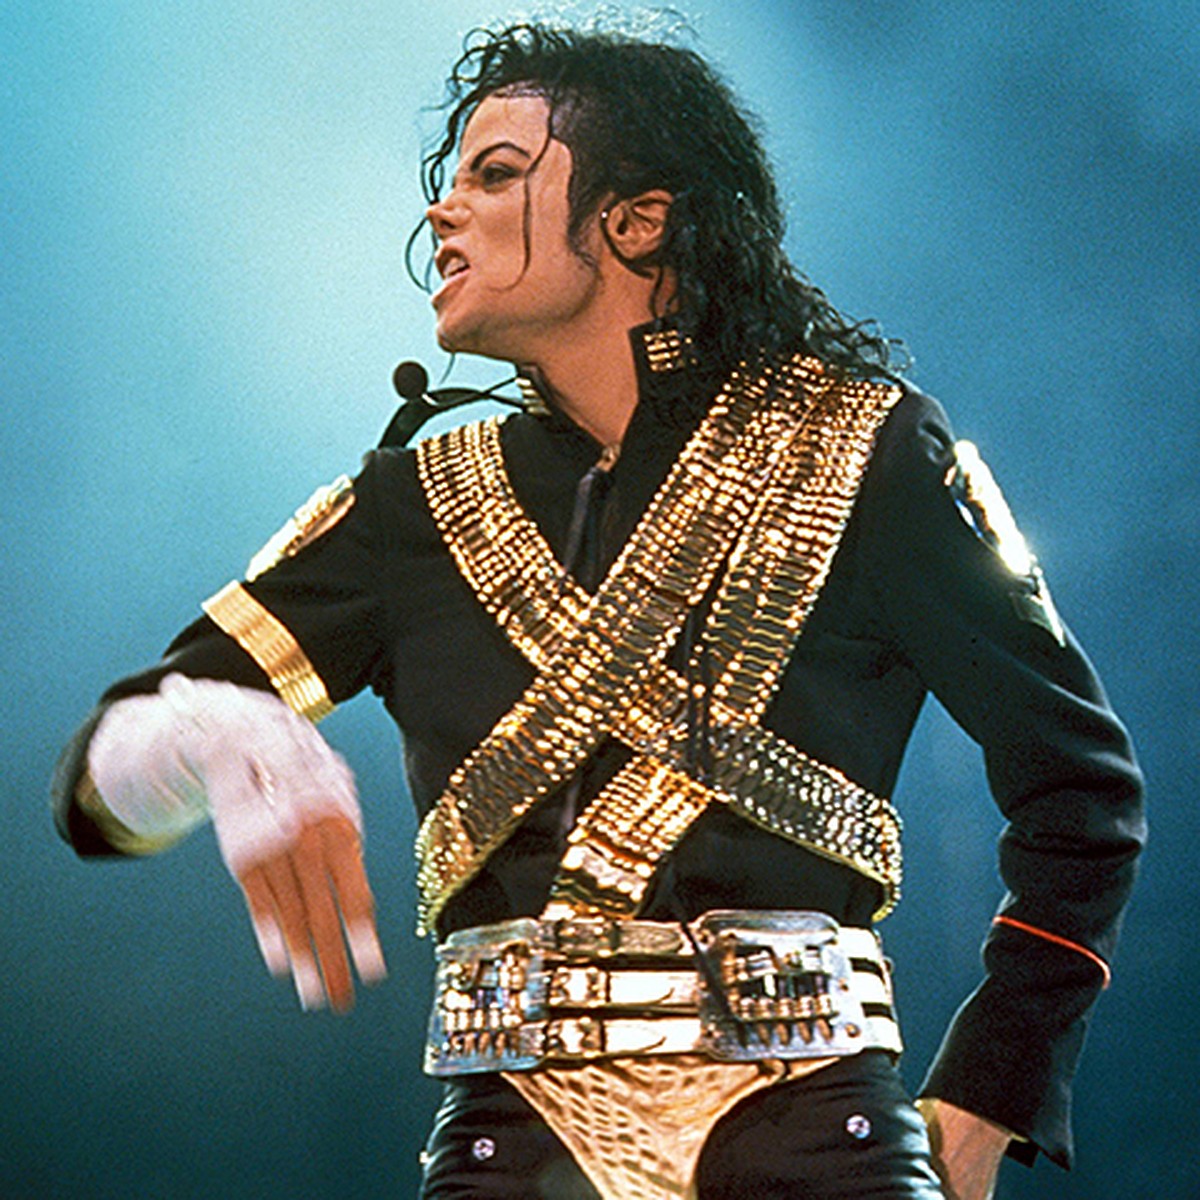 Майкл Джексон до и после операции: как менялась внешность культового певца